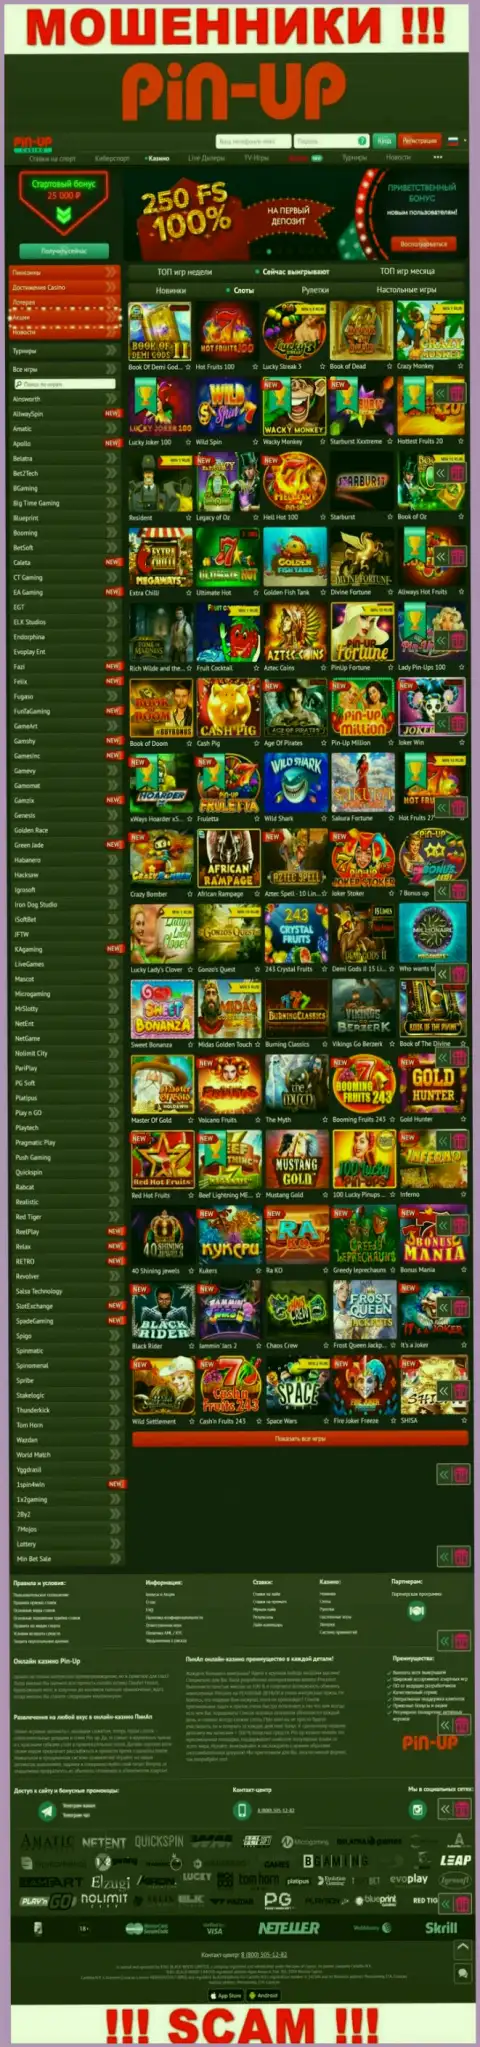 Pin-Up Casino - это официальный онлайн-сервис интернет-ворюг PinUpCasino